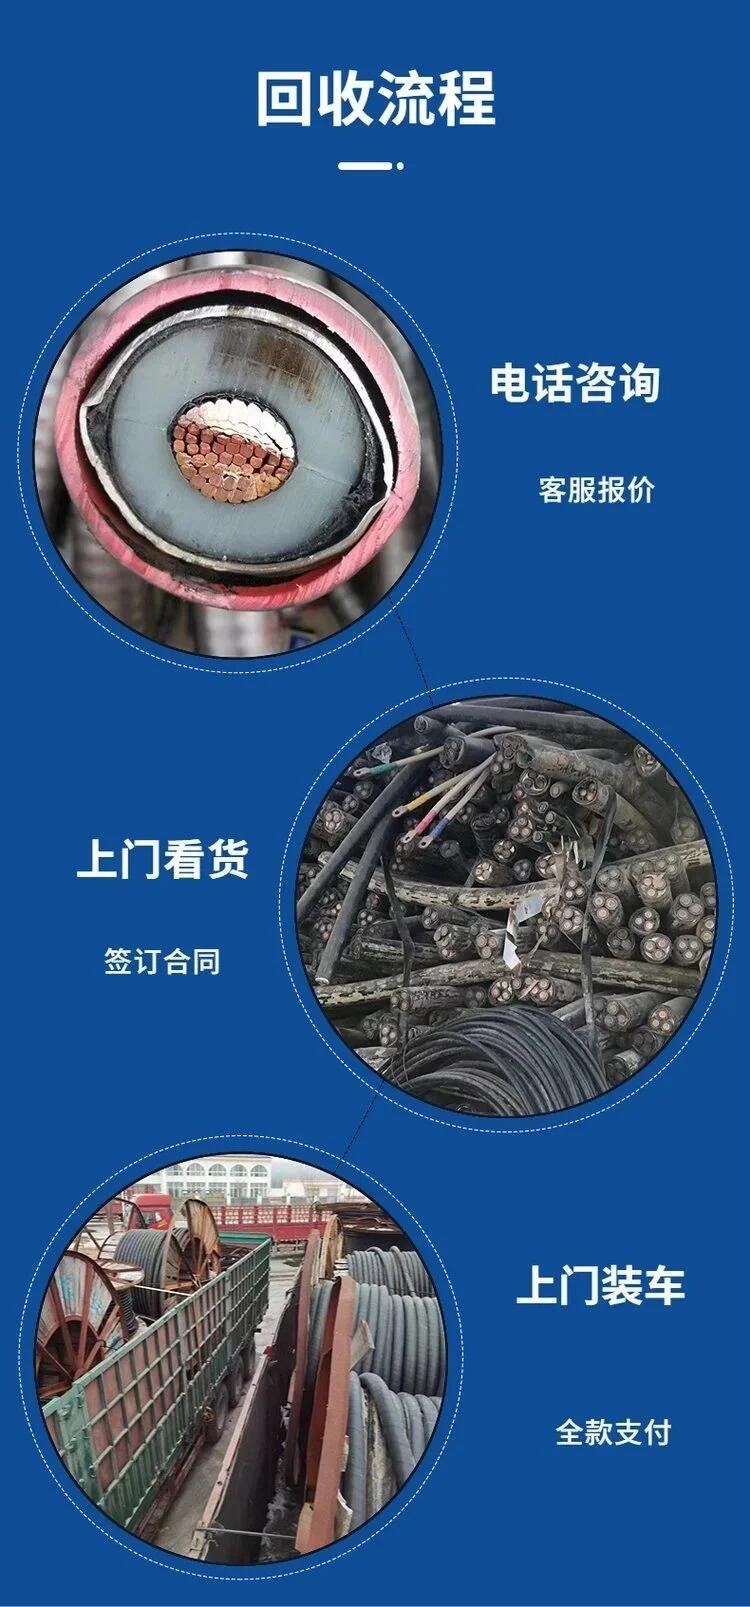 深圳坪山废旧电缆拆除回收变电房收购公司负责报价